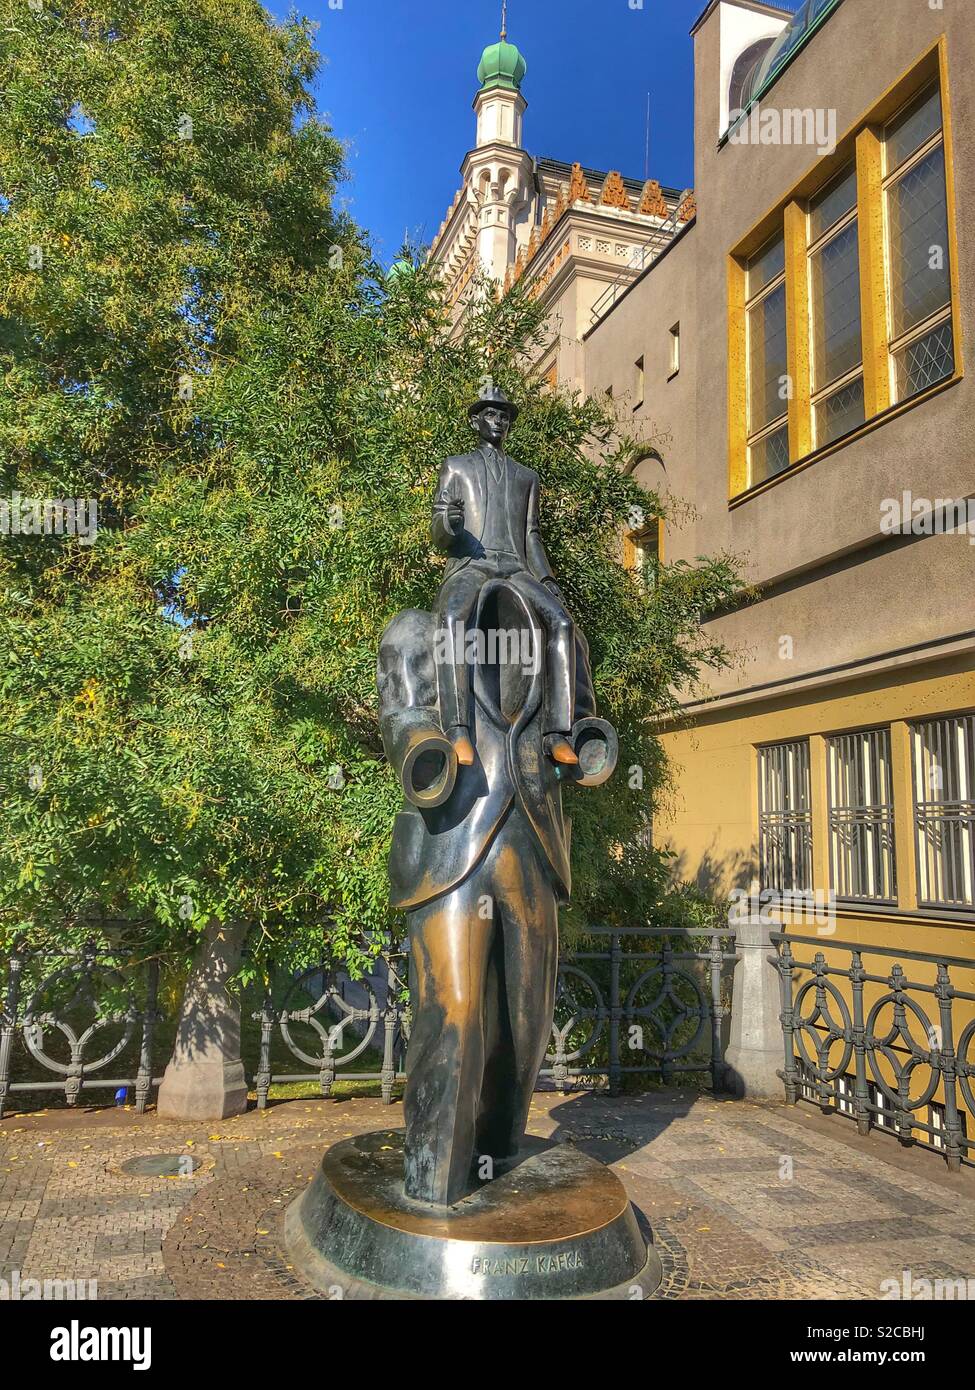 Franz Kafka statue in Prague. Stock Photo